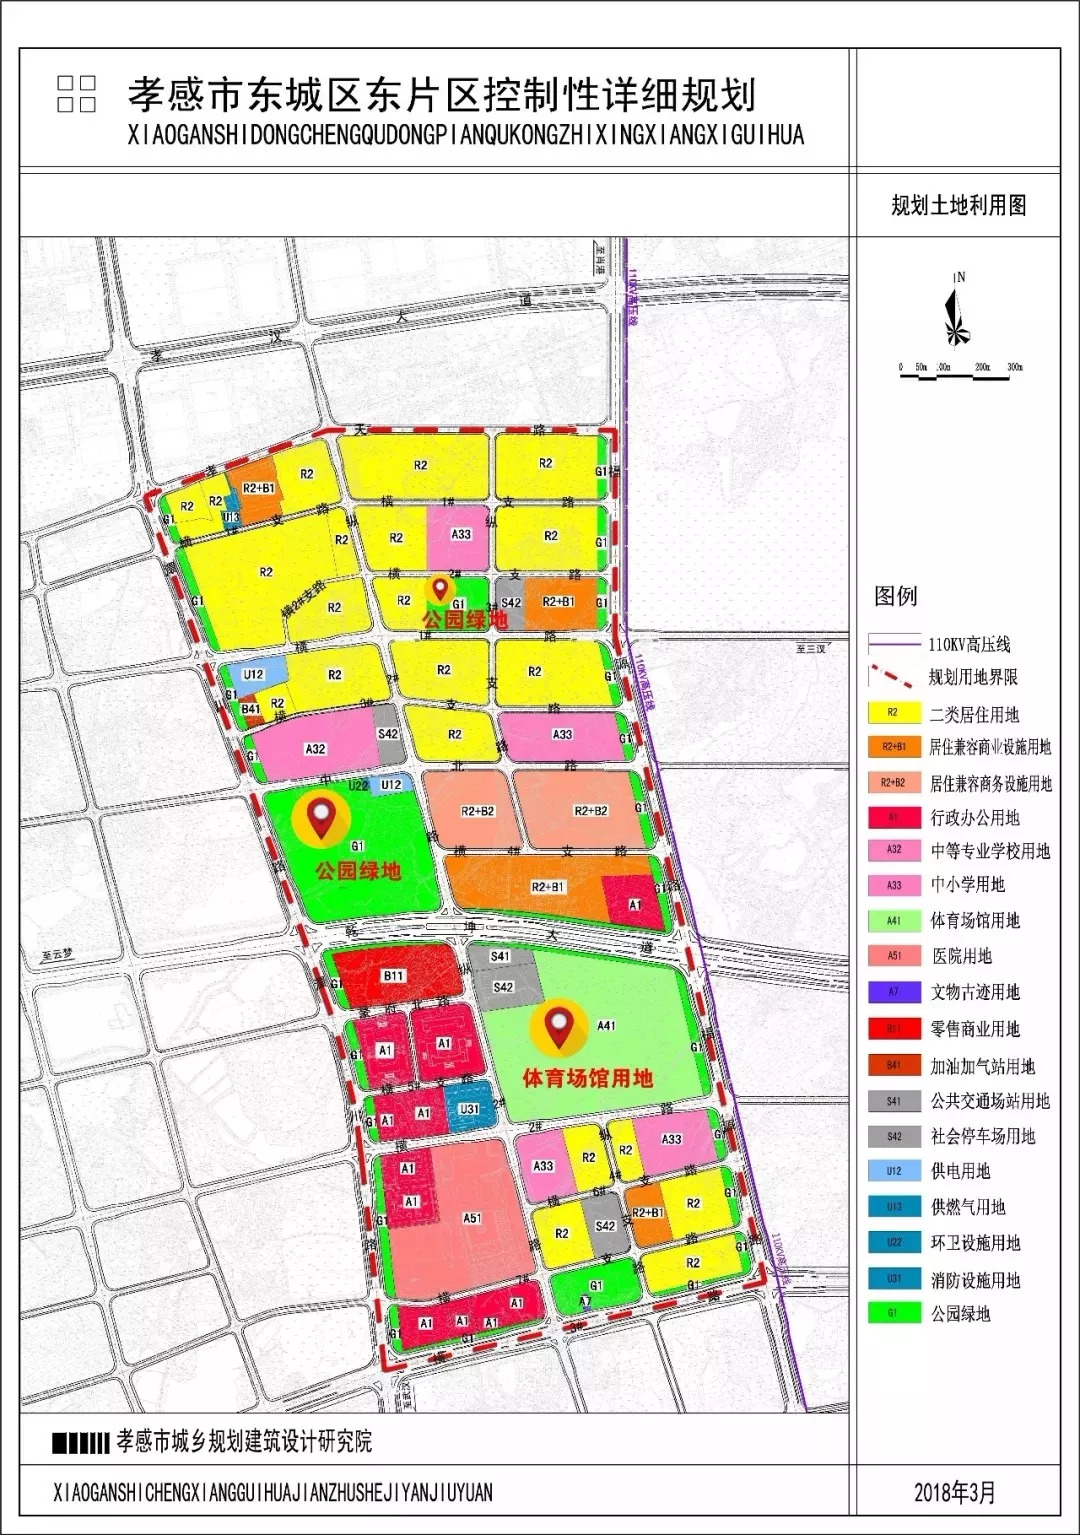 孝感将新建幼儿园,东城区总共7所,规划图如下:规划新建幼儿园区域如下